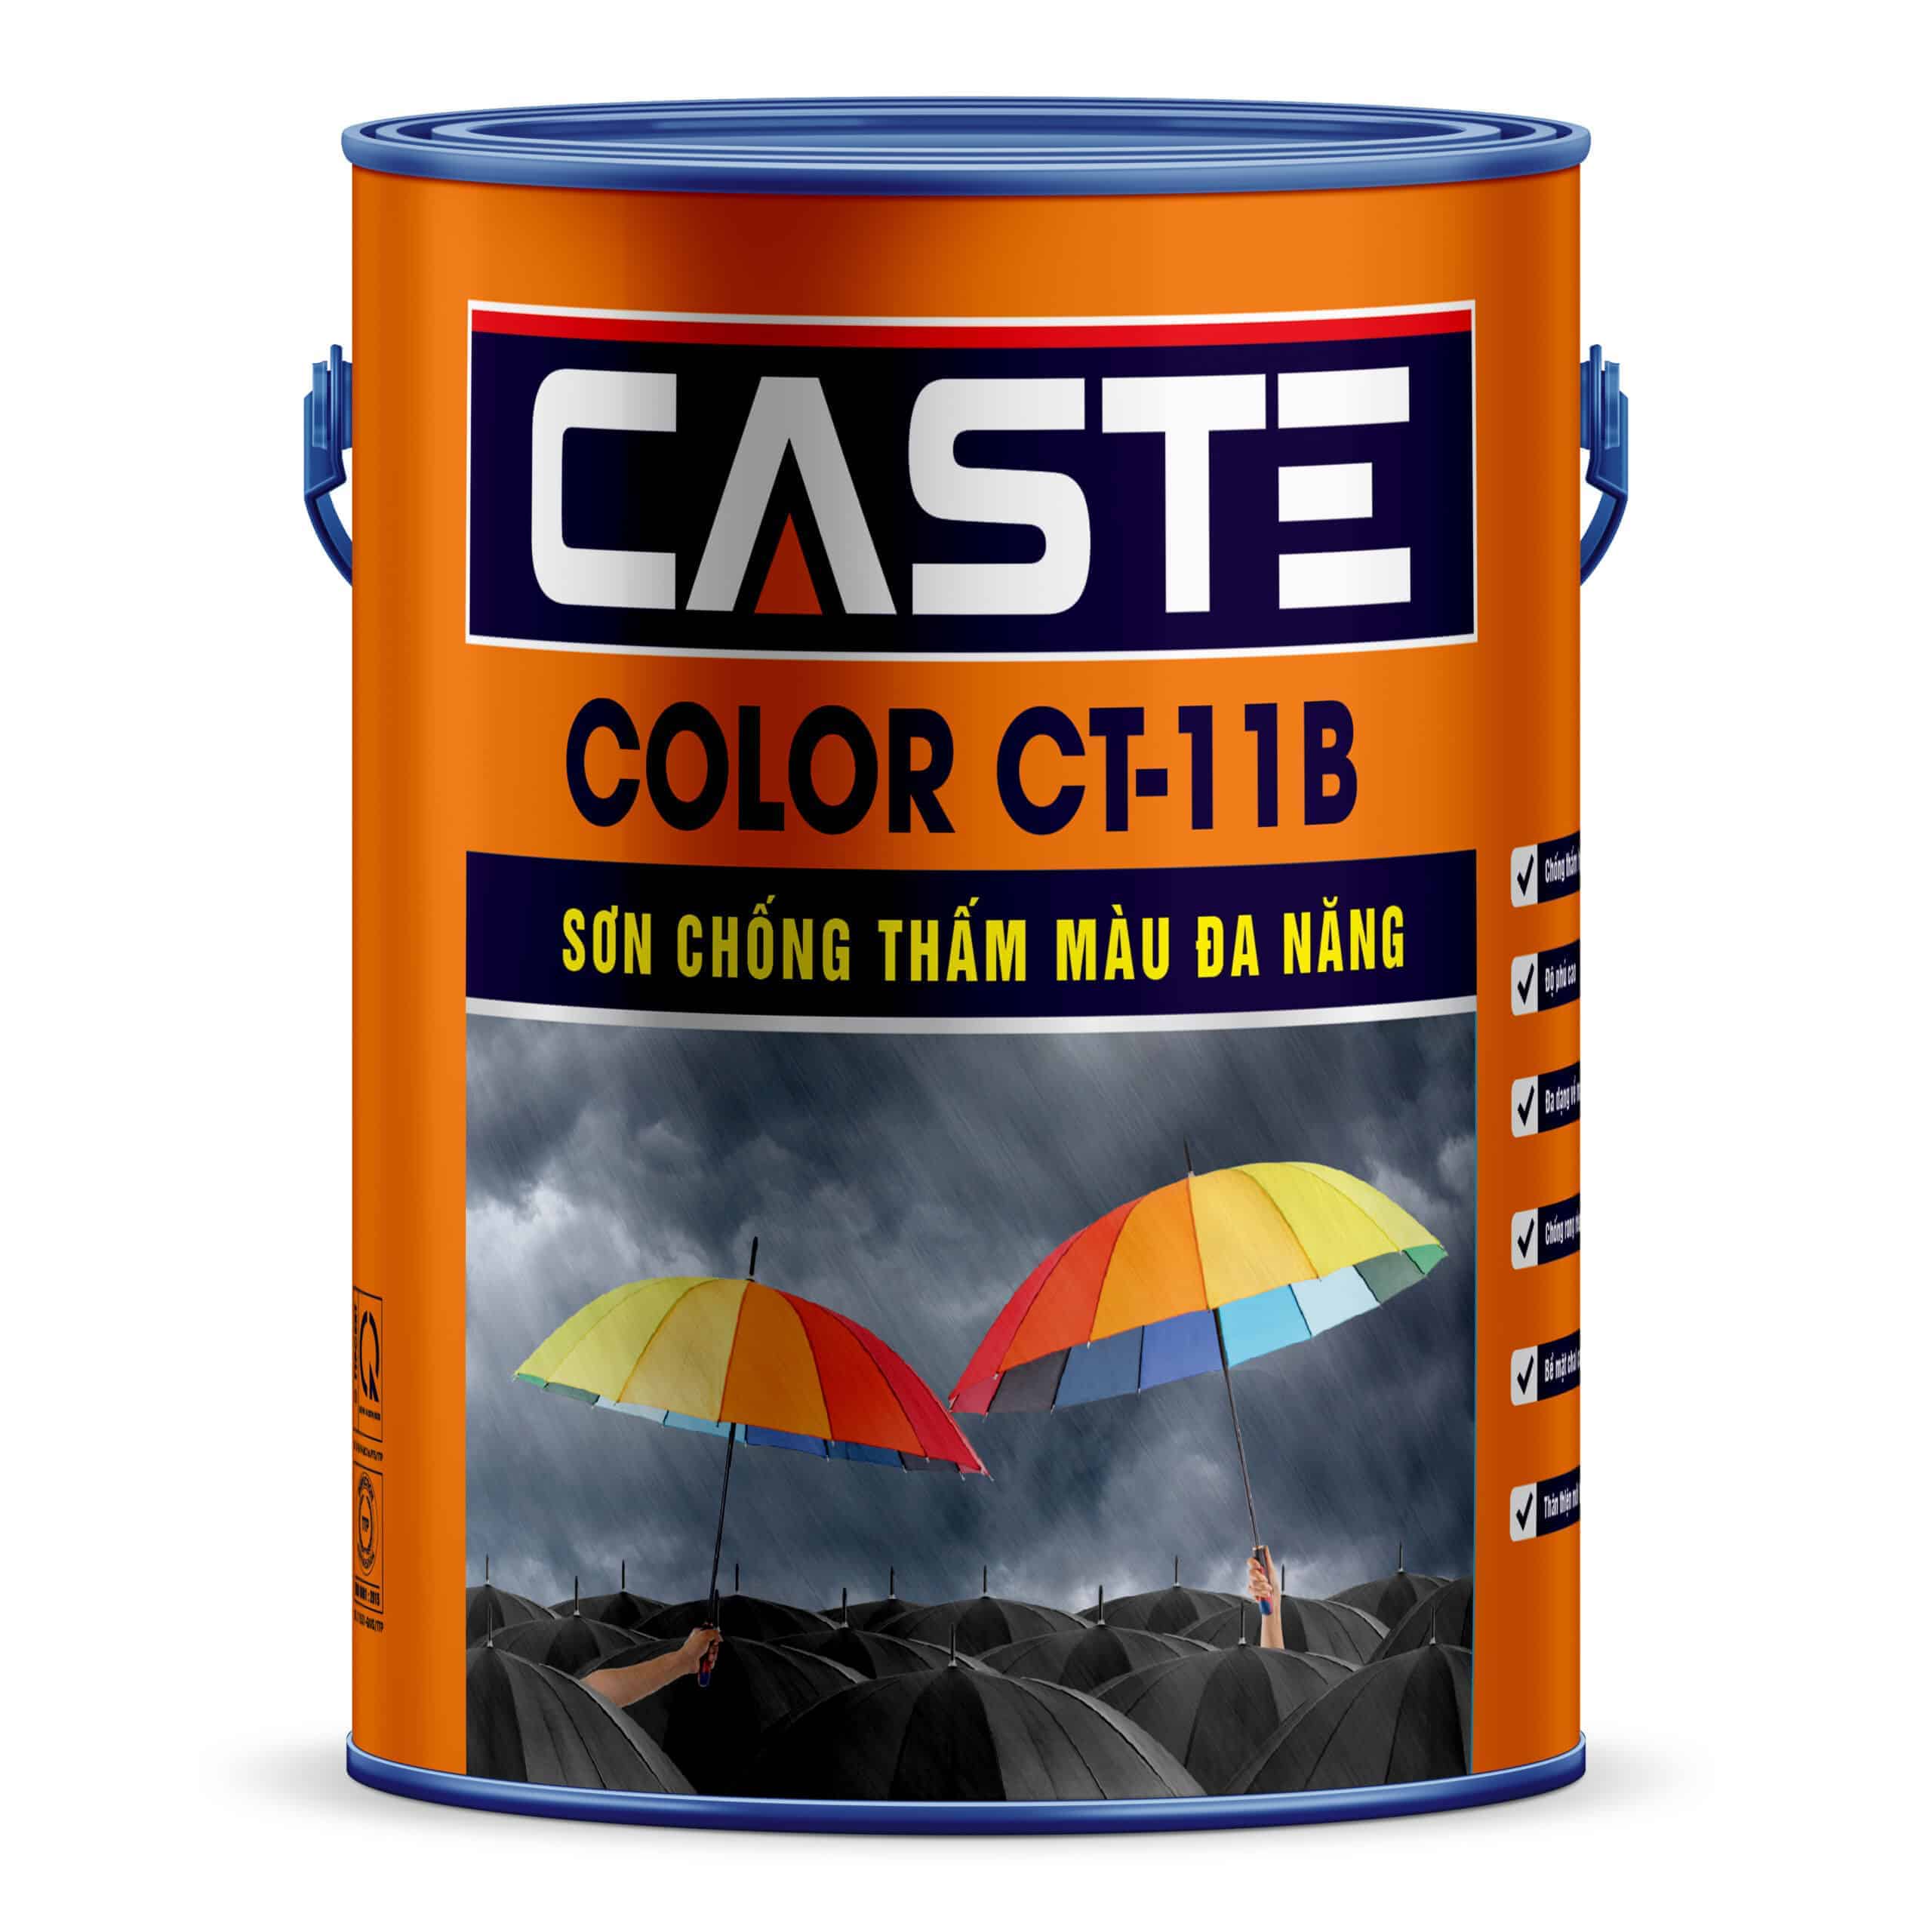 Sơn Chống Thấm Màu Đa Năng Color CT-11B Caste